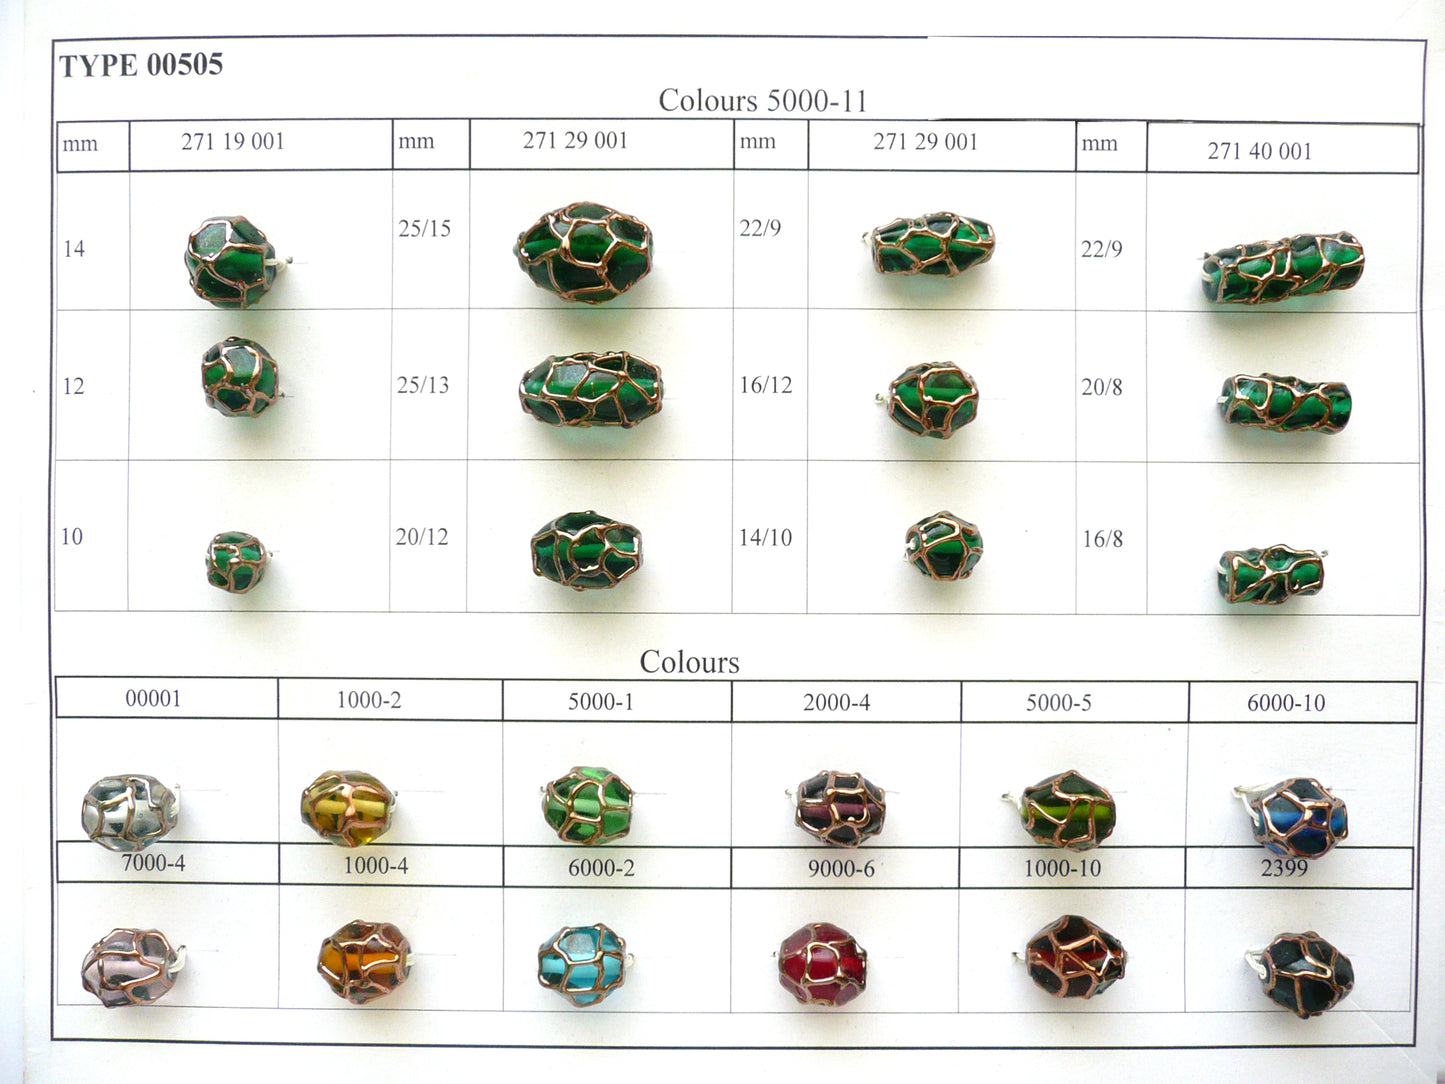 30 Stück Lampwork-Perlen 505 / Zylinder (271-40-001), handgefertigt, Preciosa-Glas, Tschechische Republik